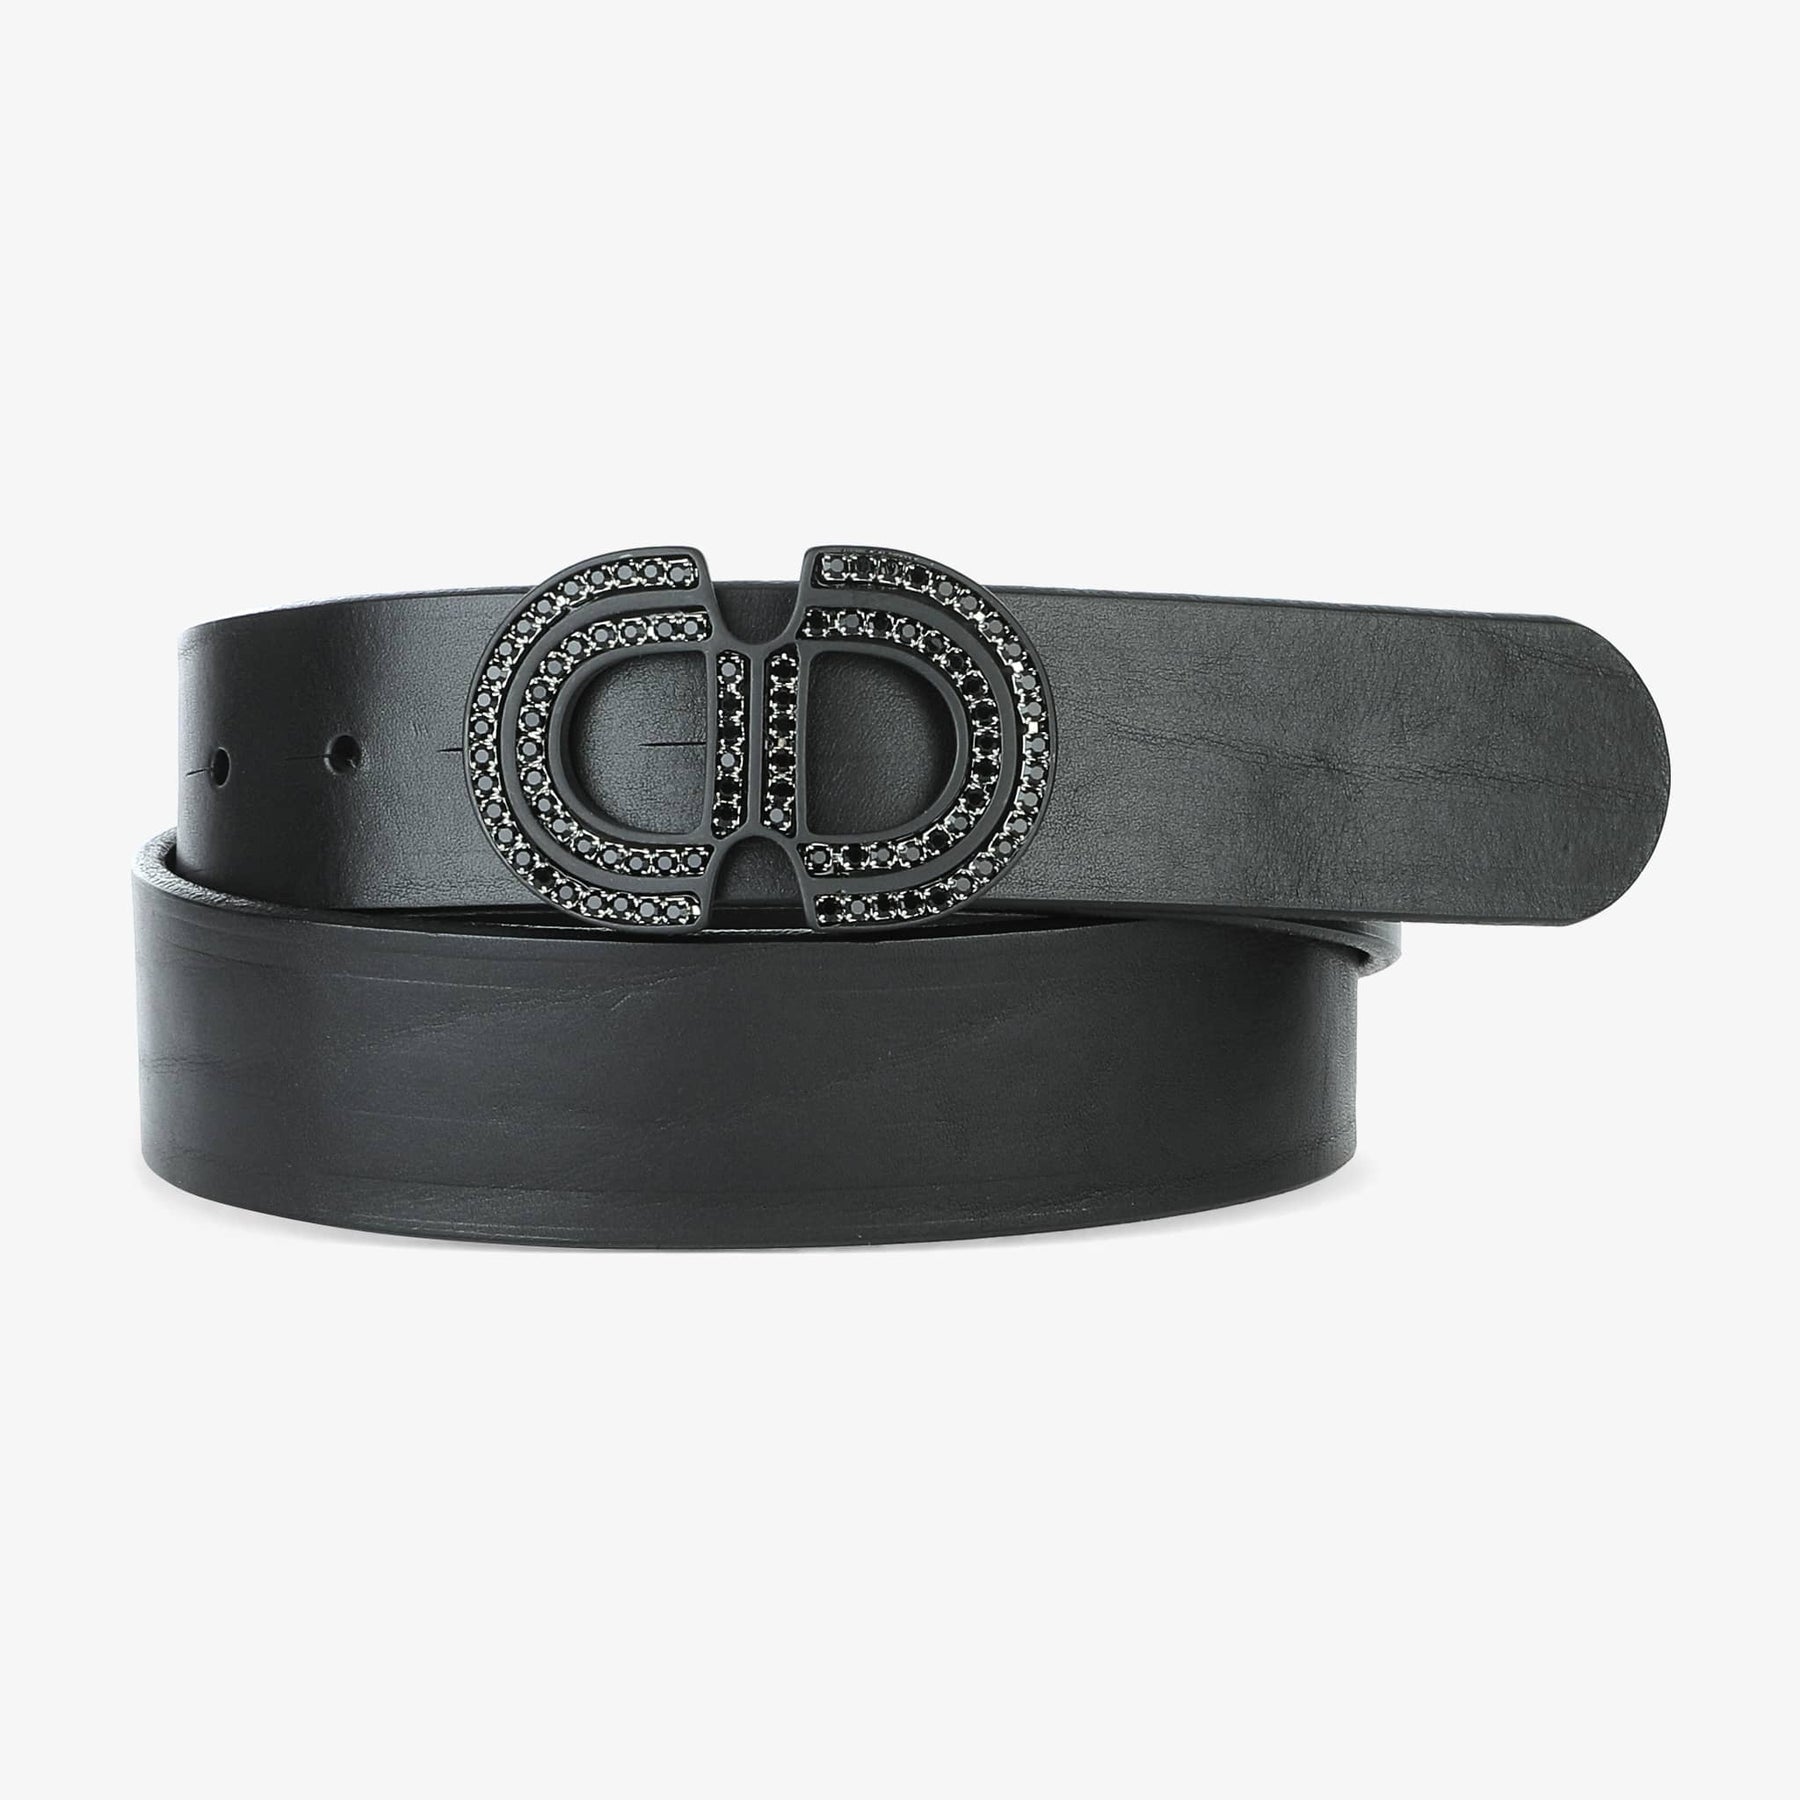 LEO BOUTIQUE ALEXANDE Jewelled Bridle Black Belt Black BRAVE Leather Belt